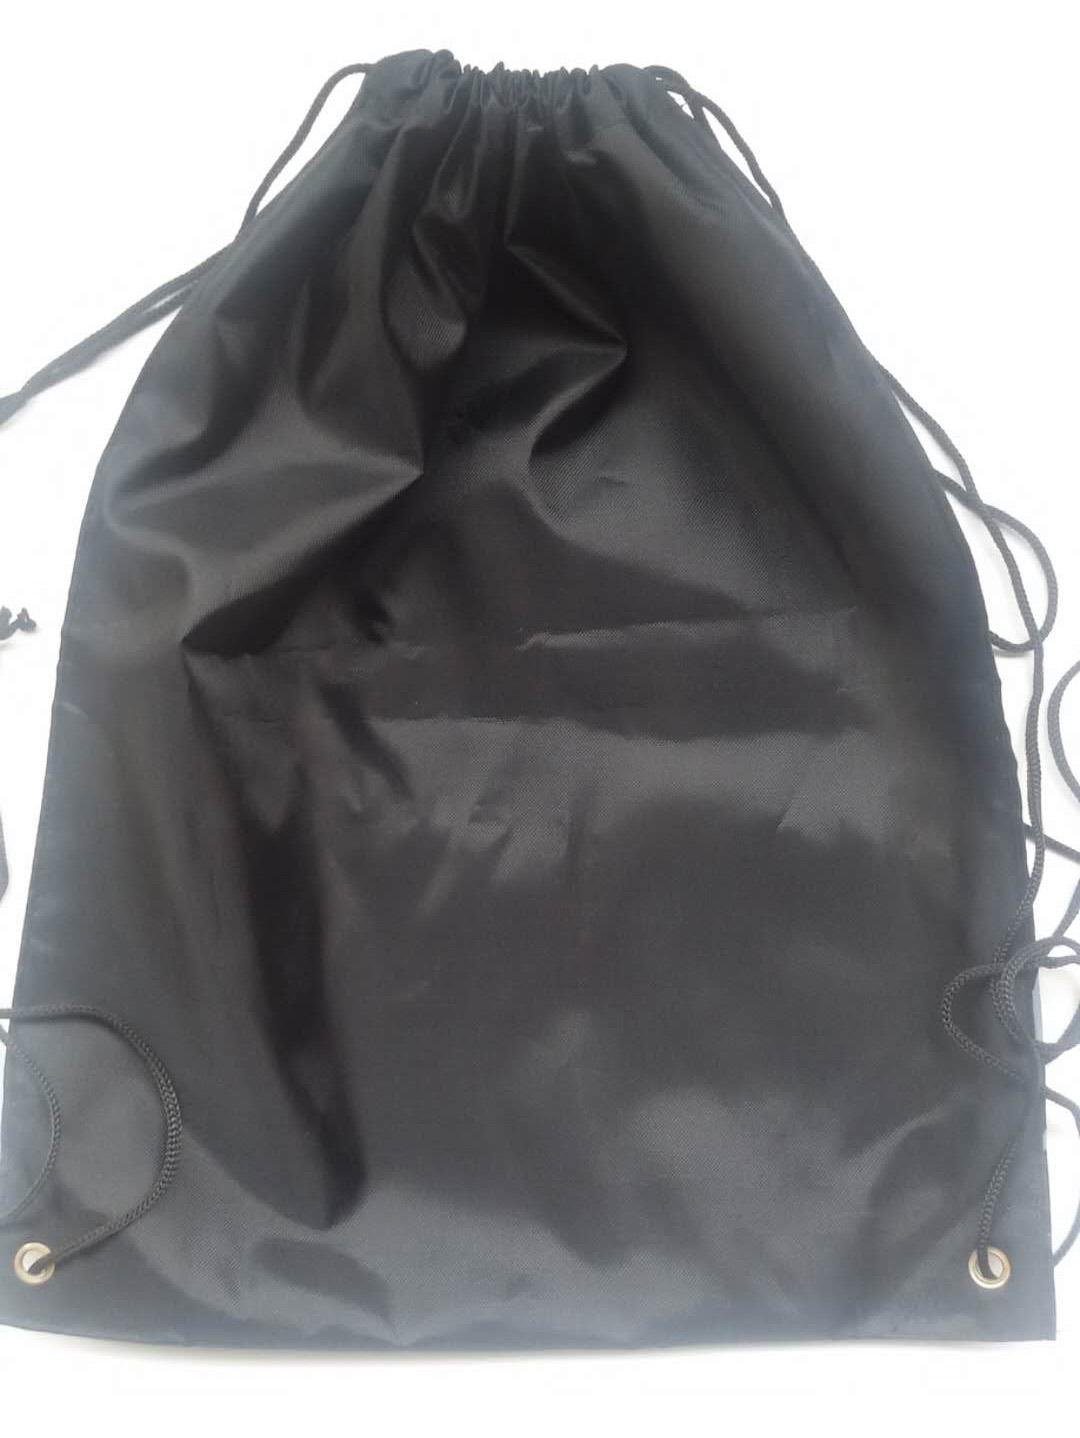 抽繩背包袋 防水布袋 戶外旅行收納袋